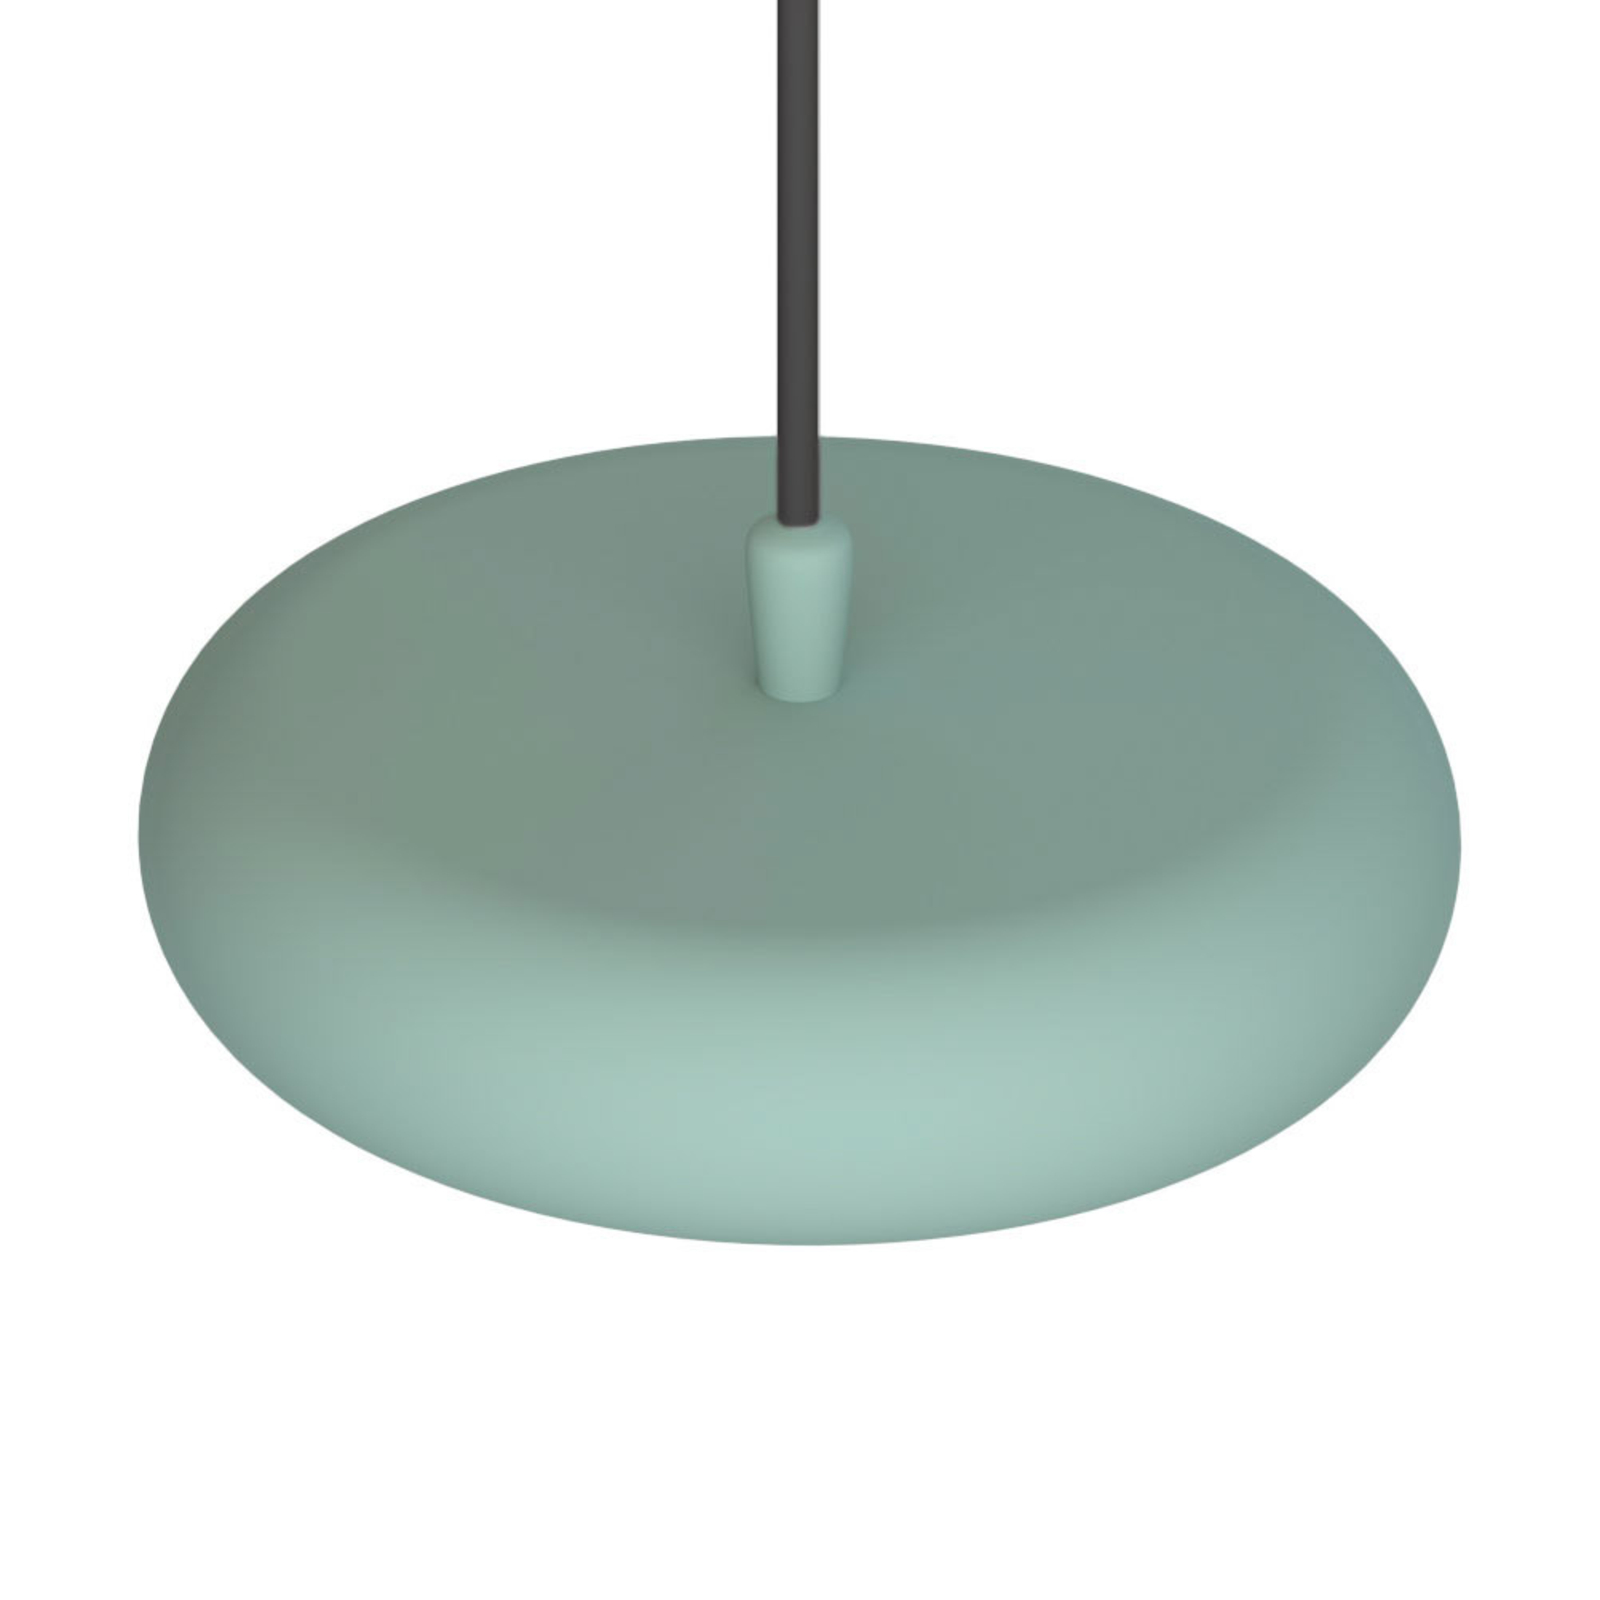 Lampa wisząca LED Boina, Ø 19 cm, zielona